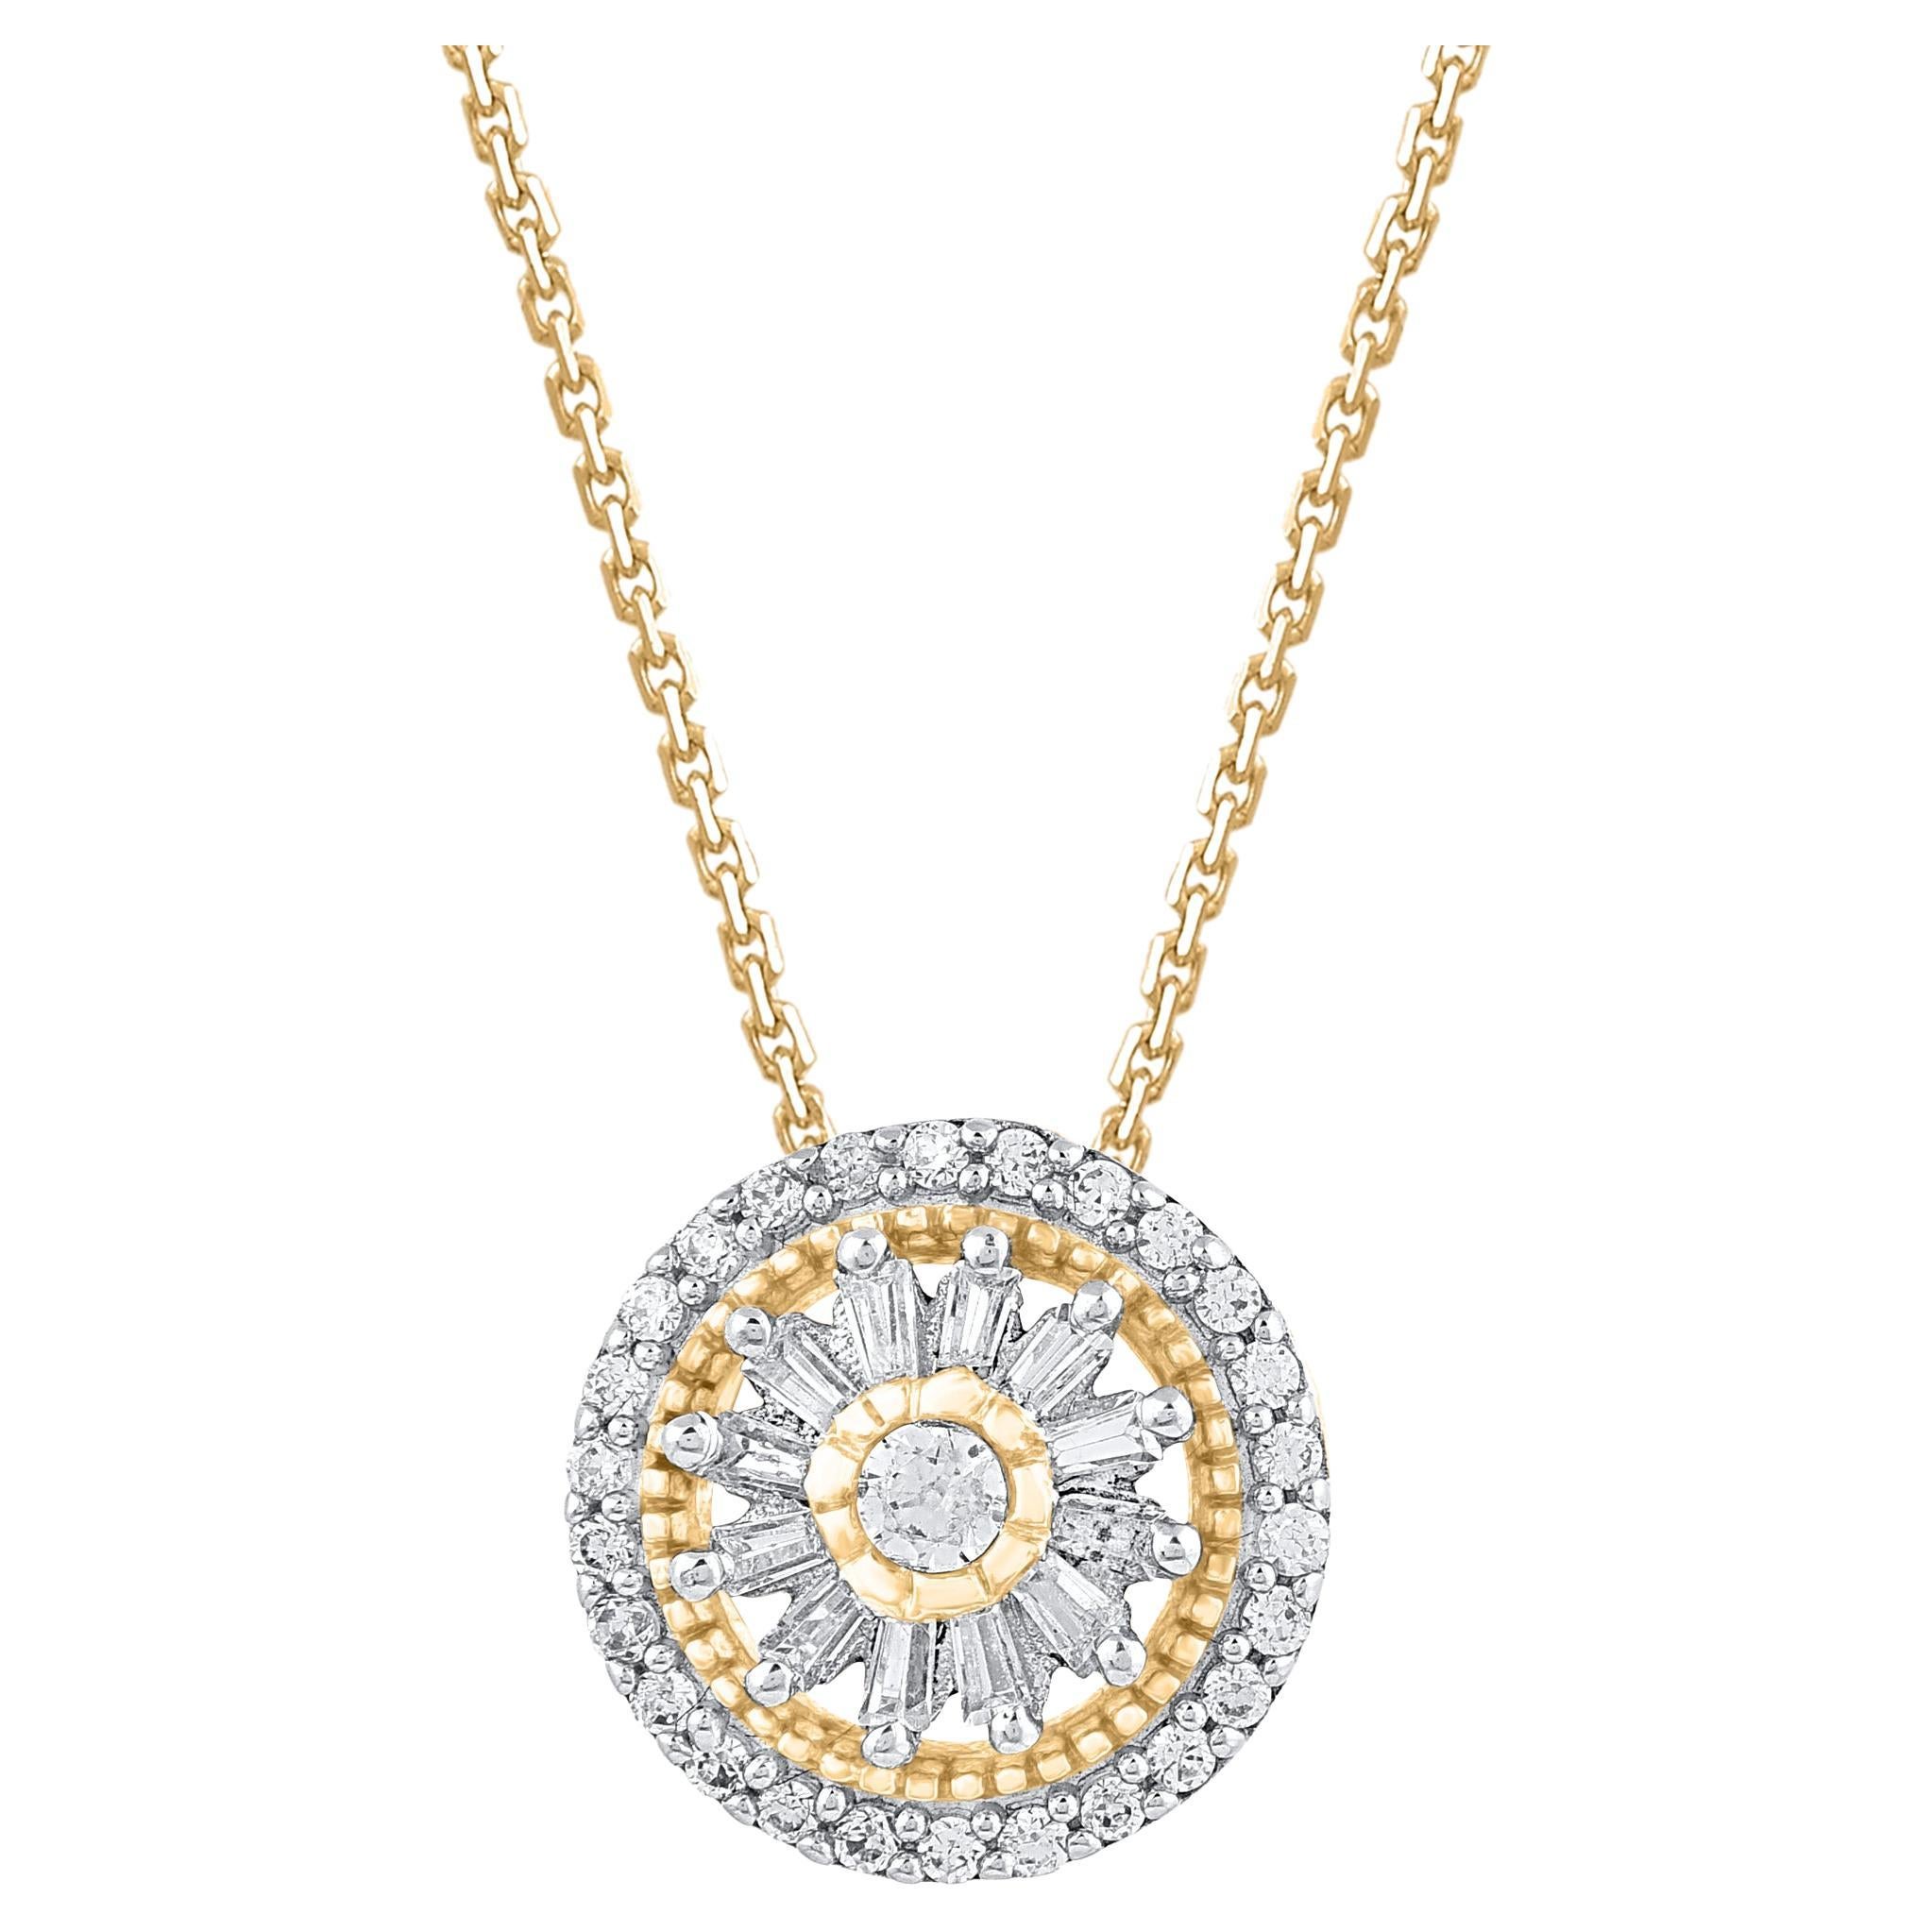 TJD 0.25 Carat Natural Diamond 14 Karat Gold Cluster Circle Pendant Necklace